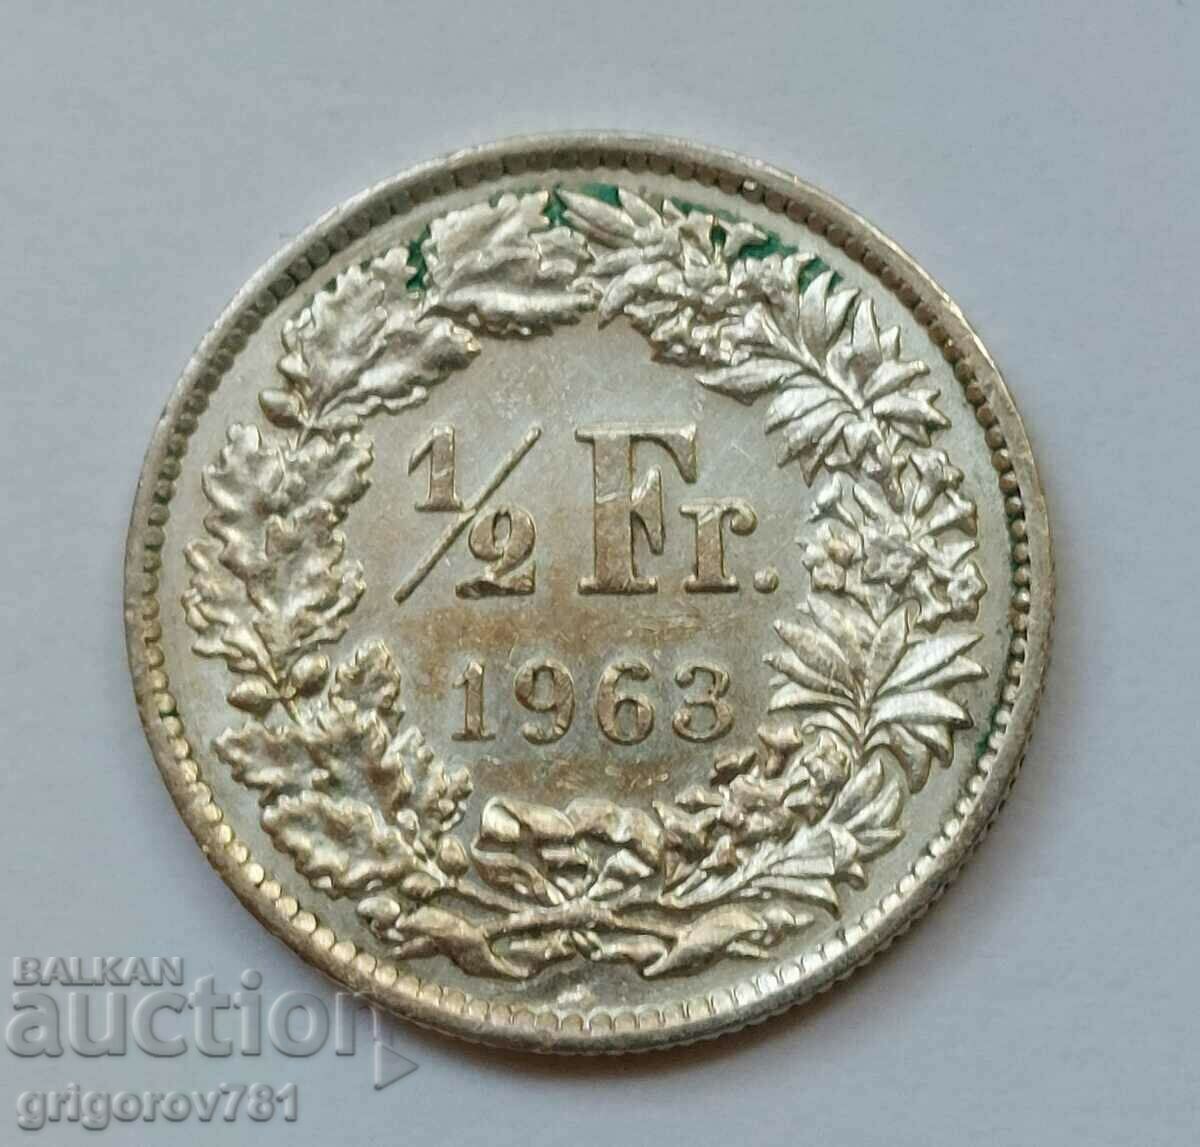 1/2 φράγκο ασήμι Ελβετία 1963 - ασημένιο νόμισμα